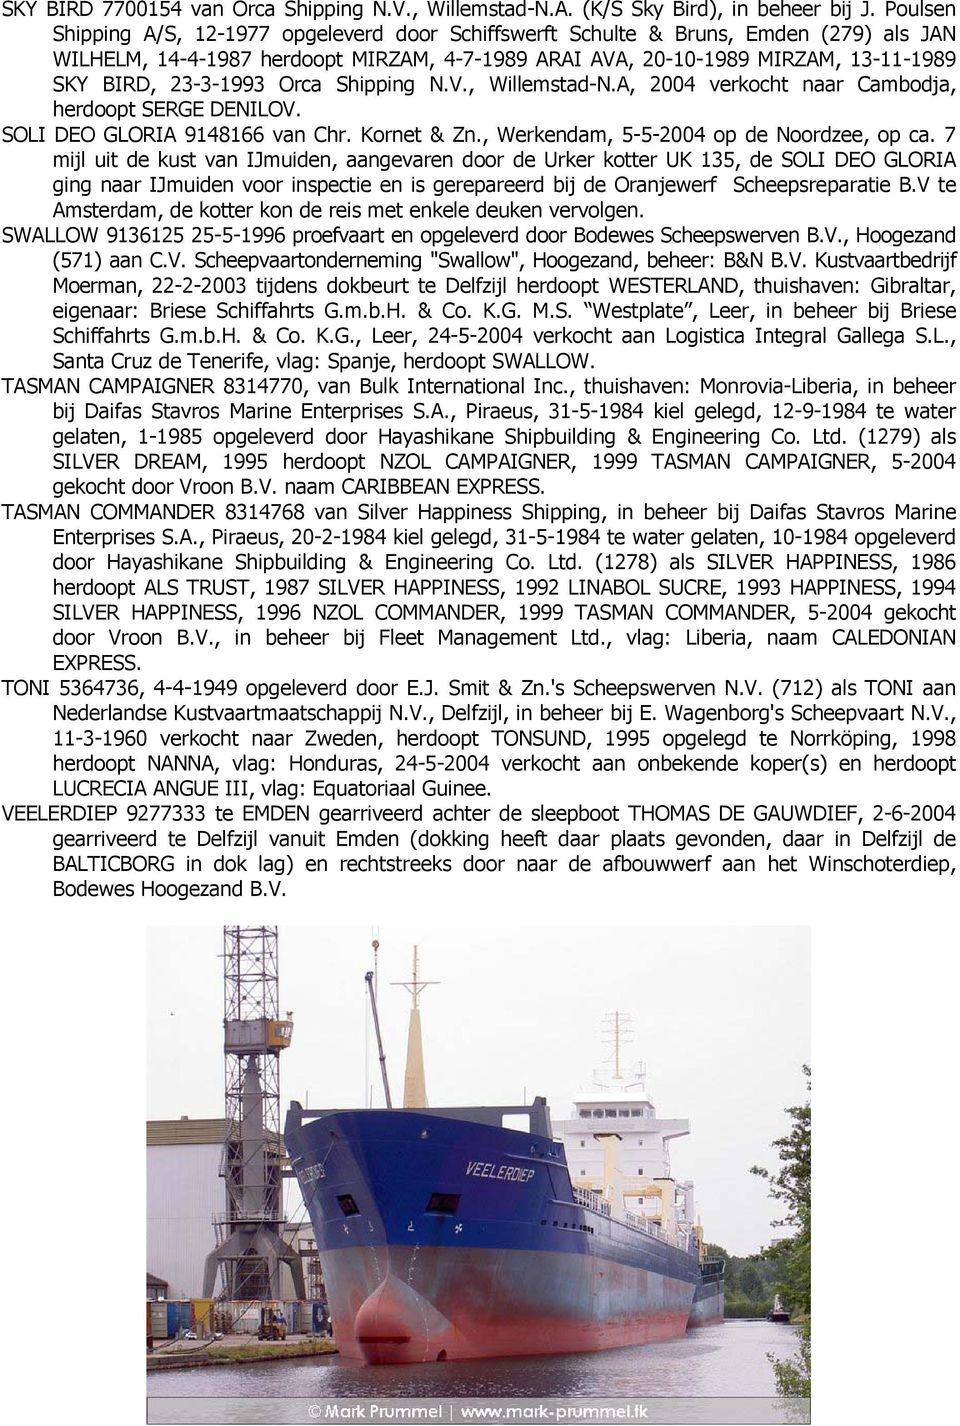 23-3-1993 Orca Shipping N.V., Willemstad-N.A, 2004 verkocht naar Cambodja, herdoopt SERGE DENILOV. SOLI DEO GLORIA 9148166 van Chr. Kornet & Zn., Werkendam, 5-5-2004 op de Noordzee, op ca.